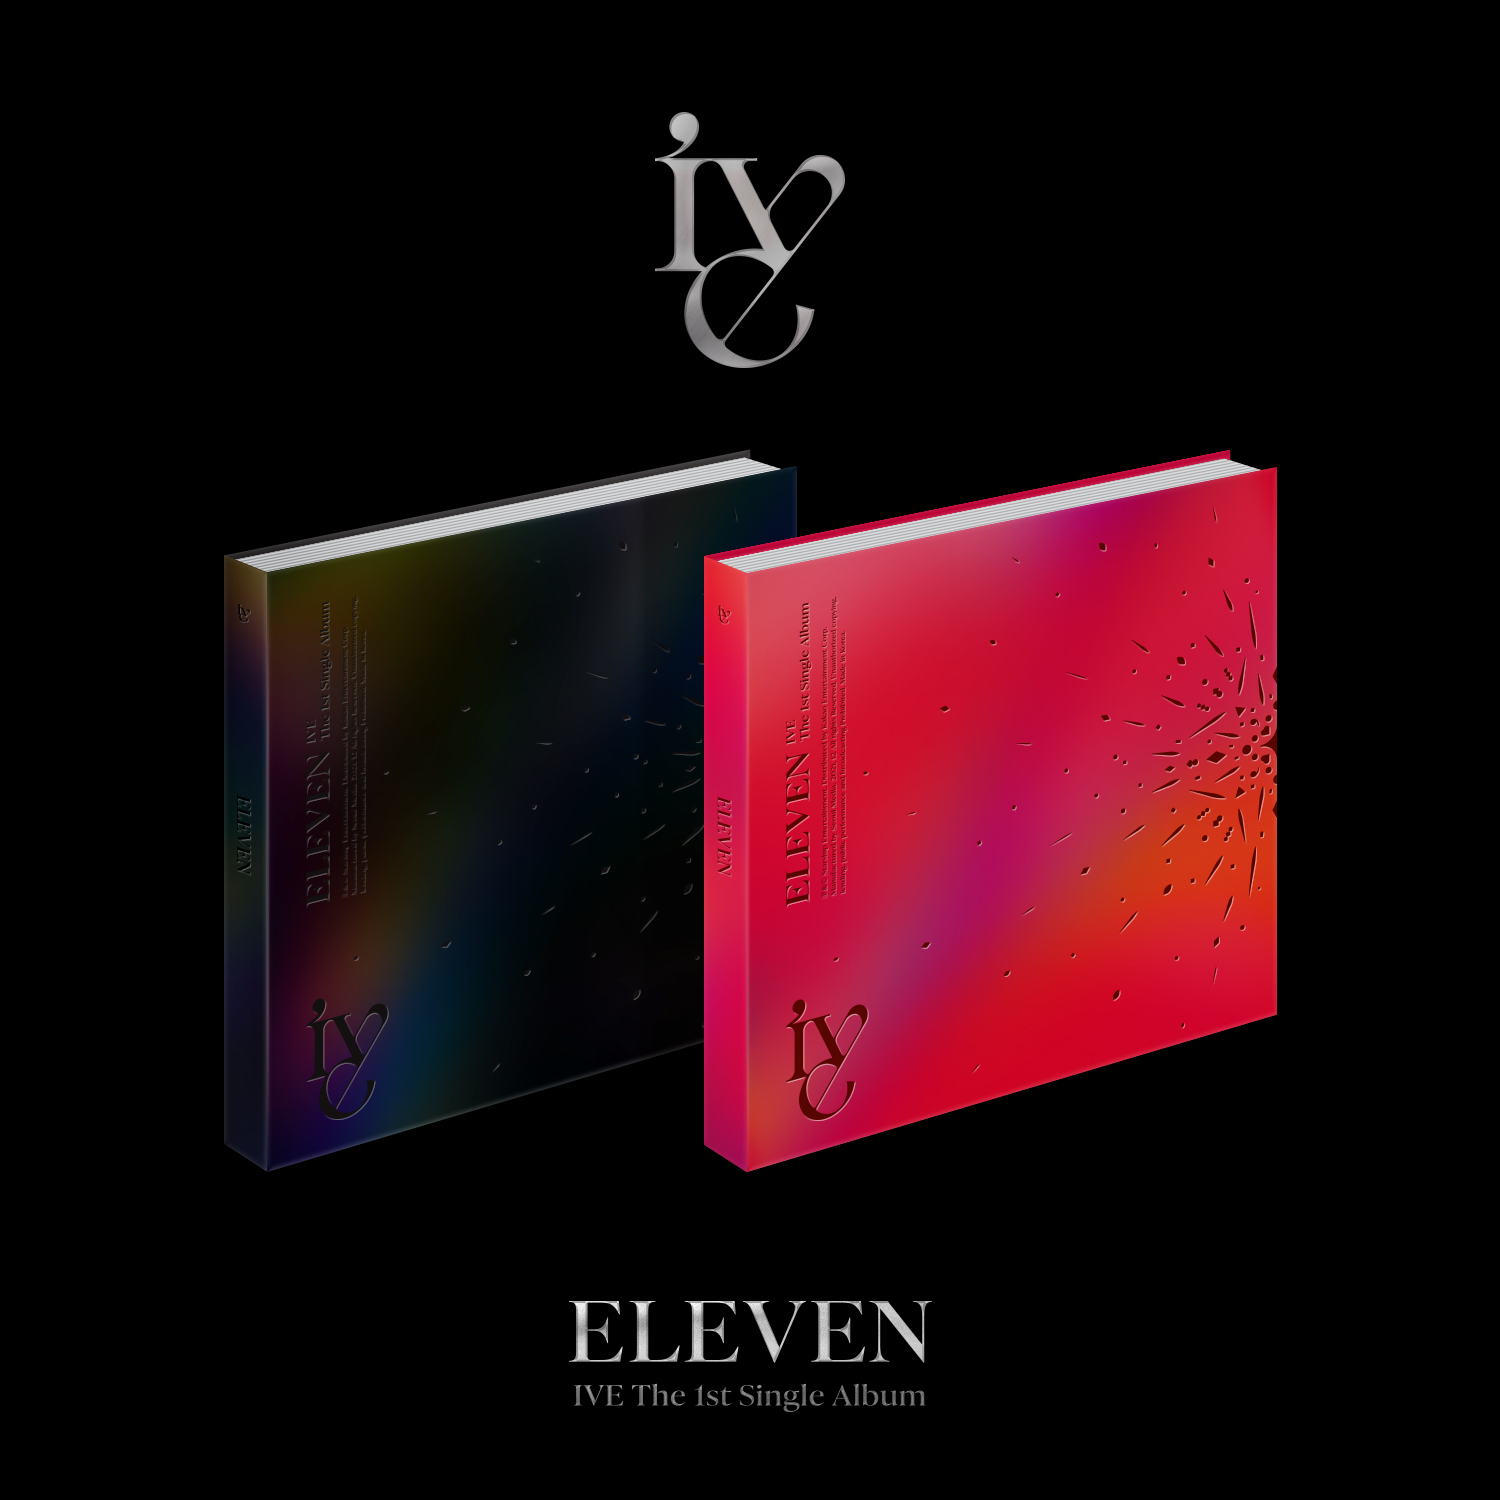 [全款 SP专-胶片相册] [活动商品] IVE - The 1st 单曲专辑 [ELEVEN] (随机版本)_安宥真吧